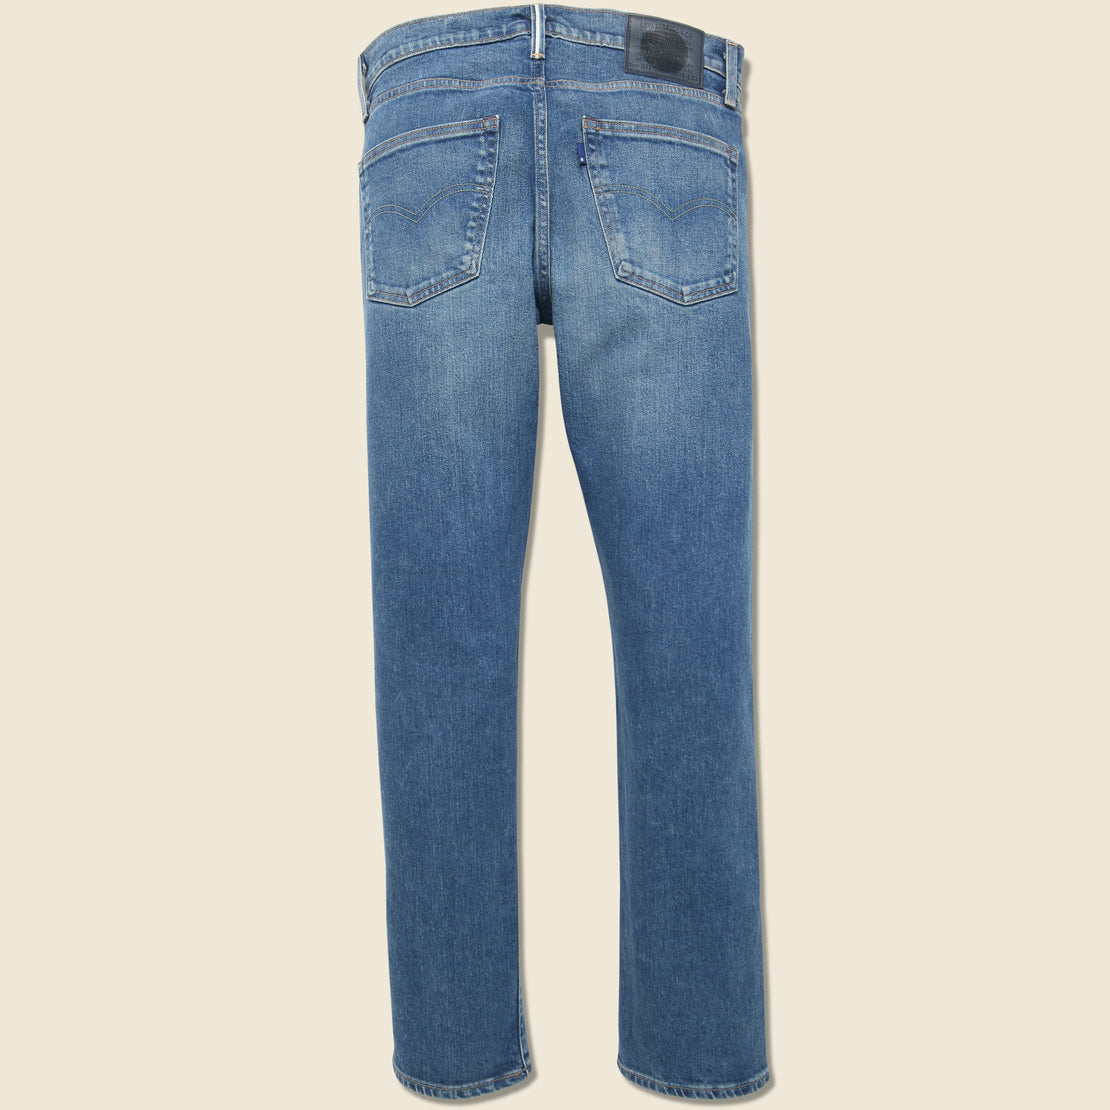 511 Slim Fit Jean - Puruburu - Levi's Made in Japan - STAG Provisions - Pants - Denim